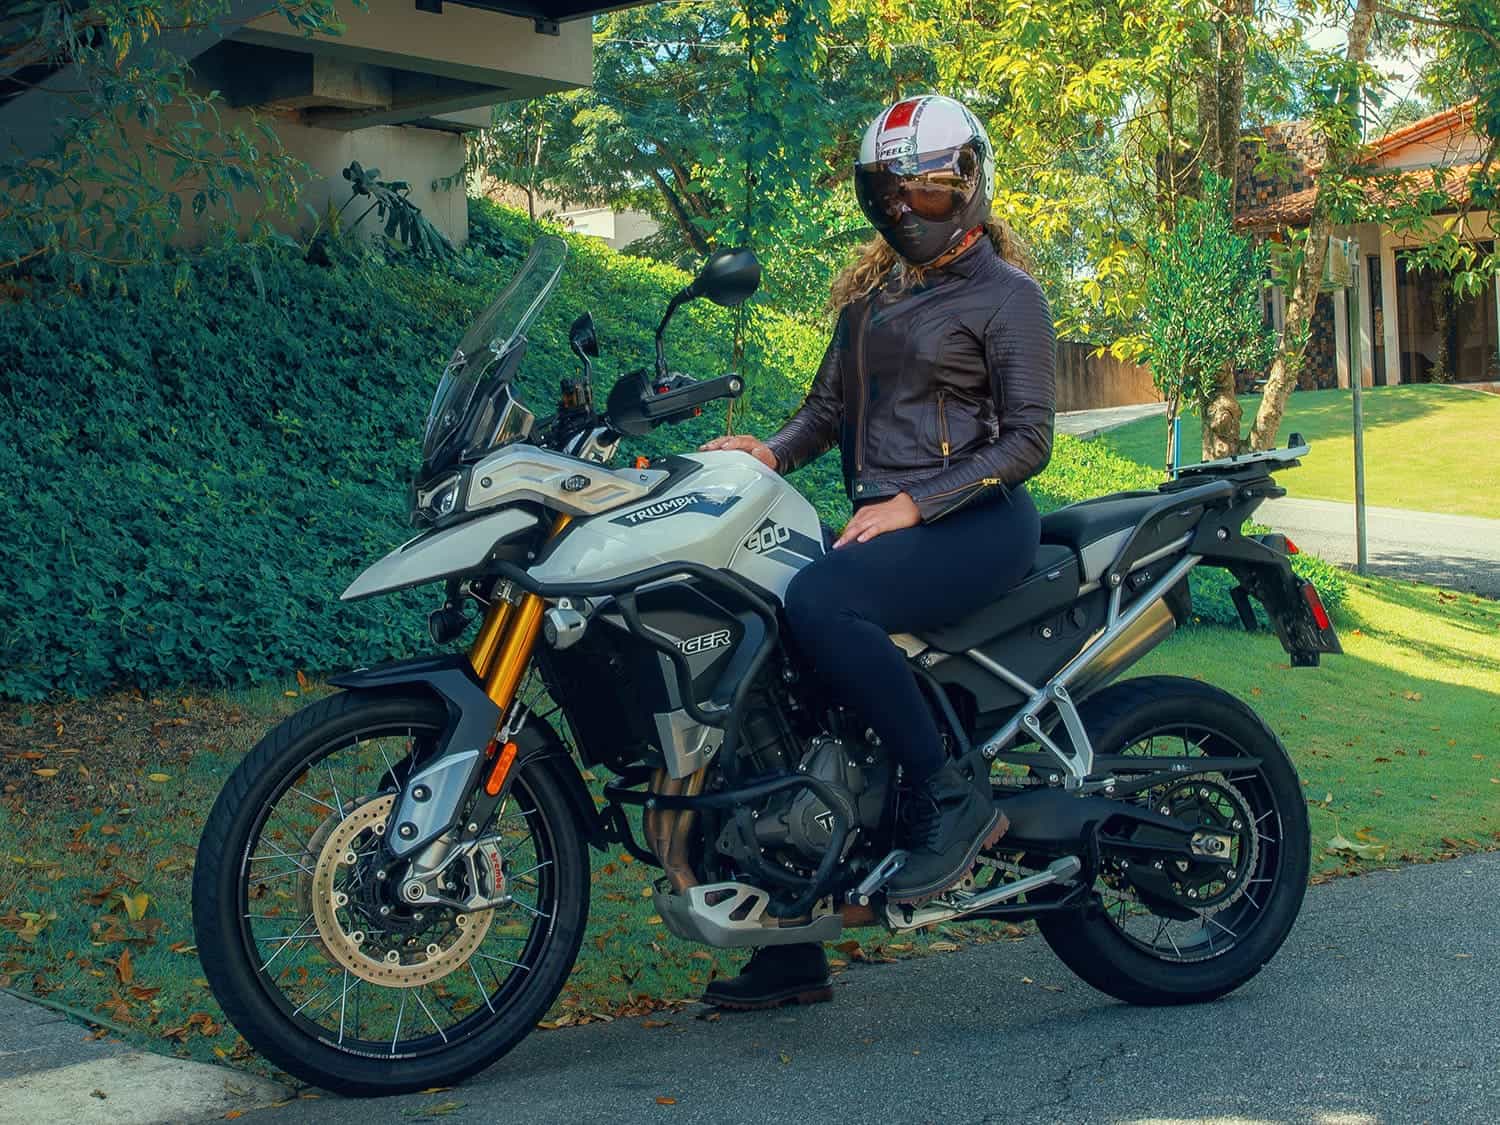 Capacete para motocross pode ser usado na rua?, Mobilidade Estadão